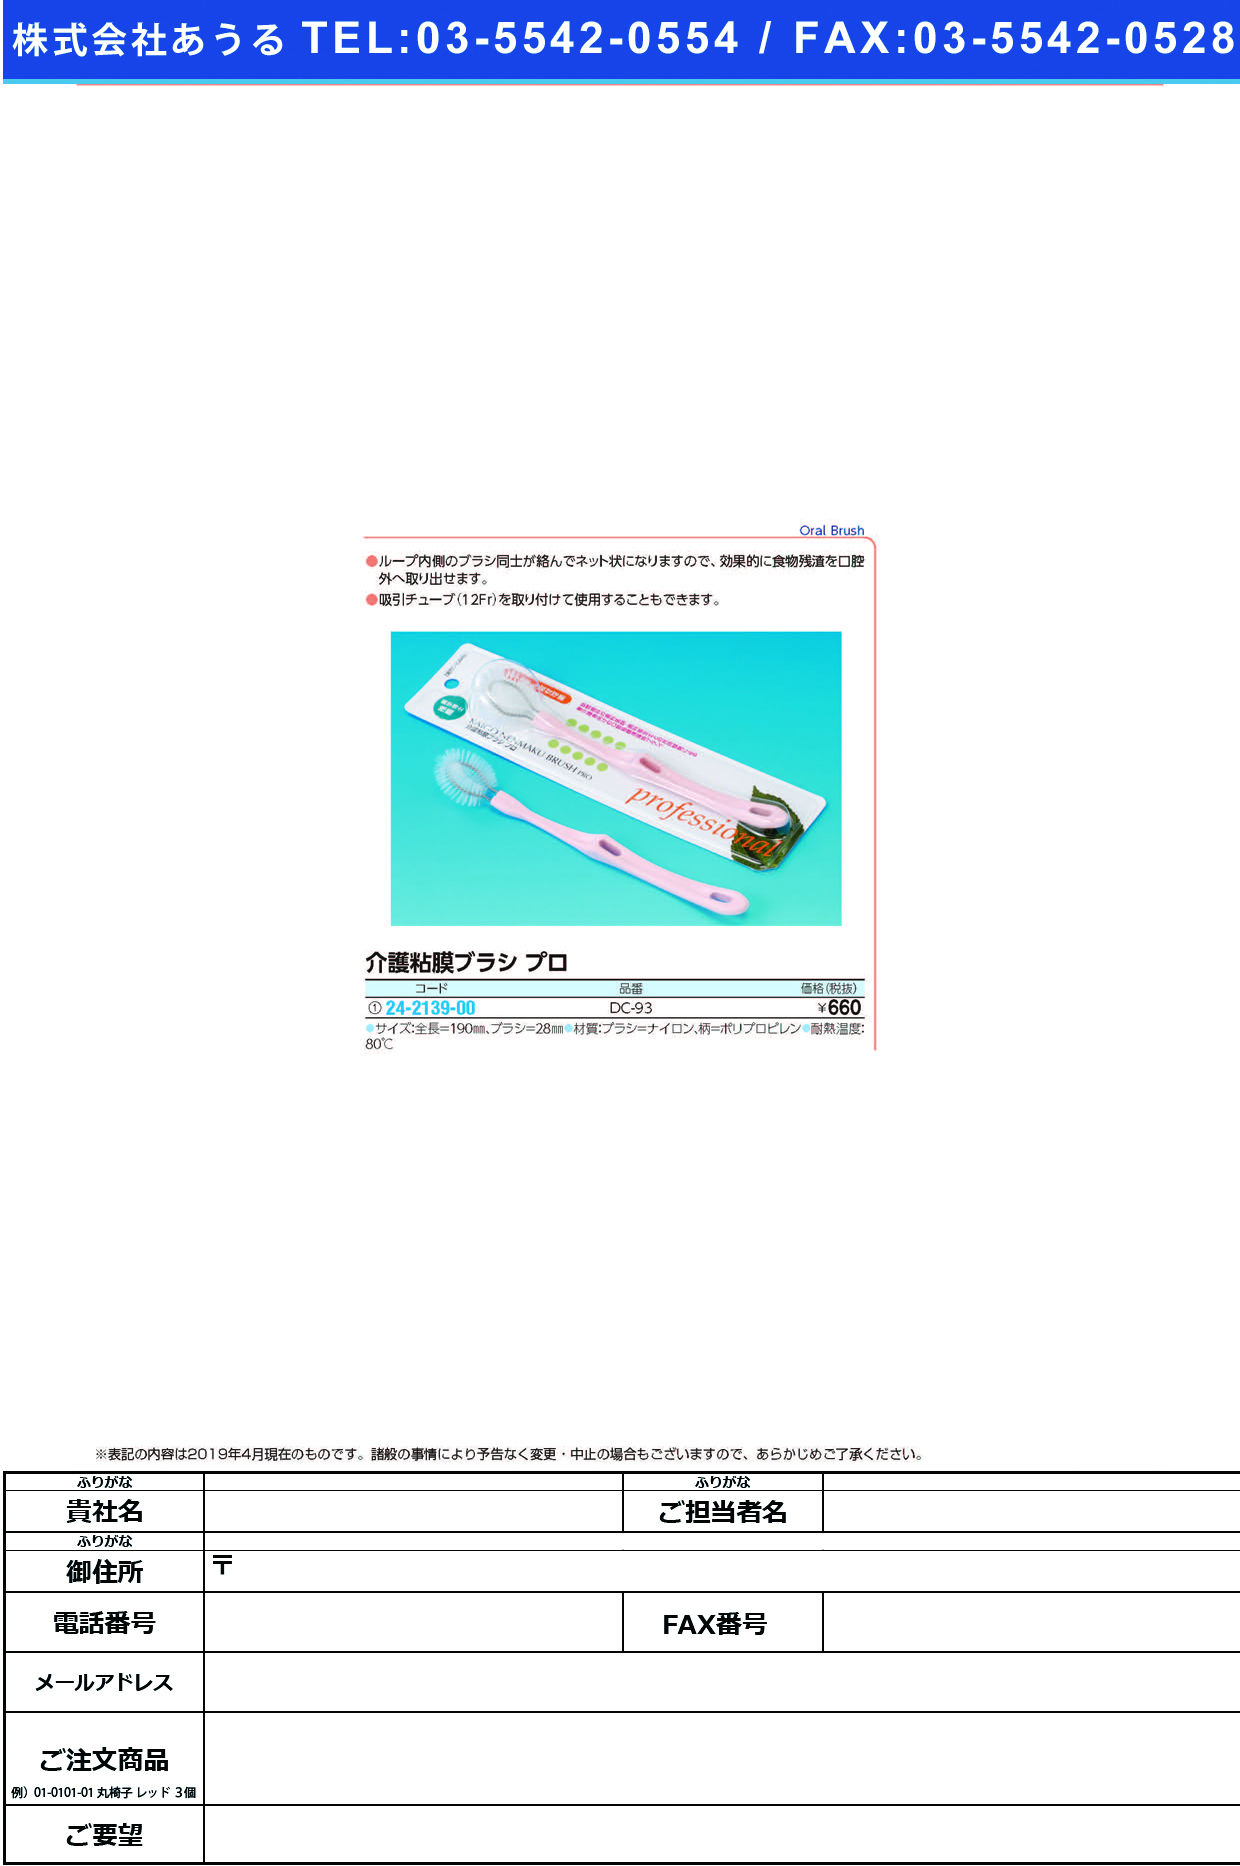 (24-2139-00)介護粘膜ブラシプロ DC-93 ｶｲｺﾞﾈﾝﾏｸﾌﾞﾗｼﾌﾟﾛ【1本単位】【2019年カタログ商品】